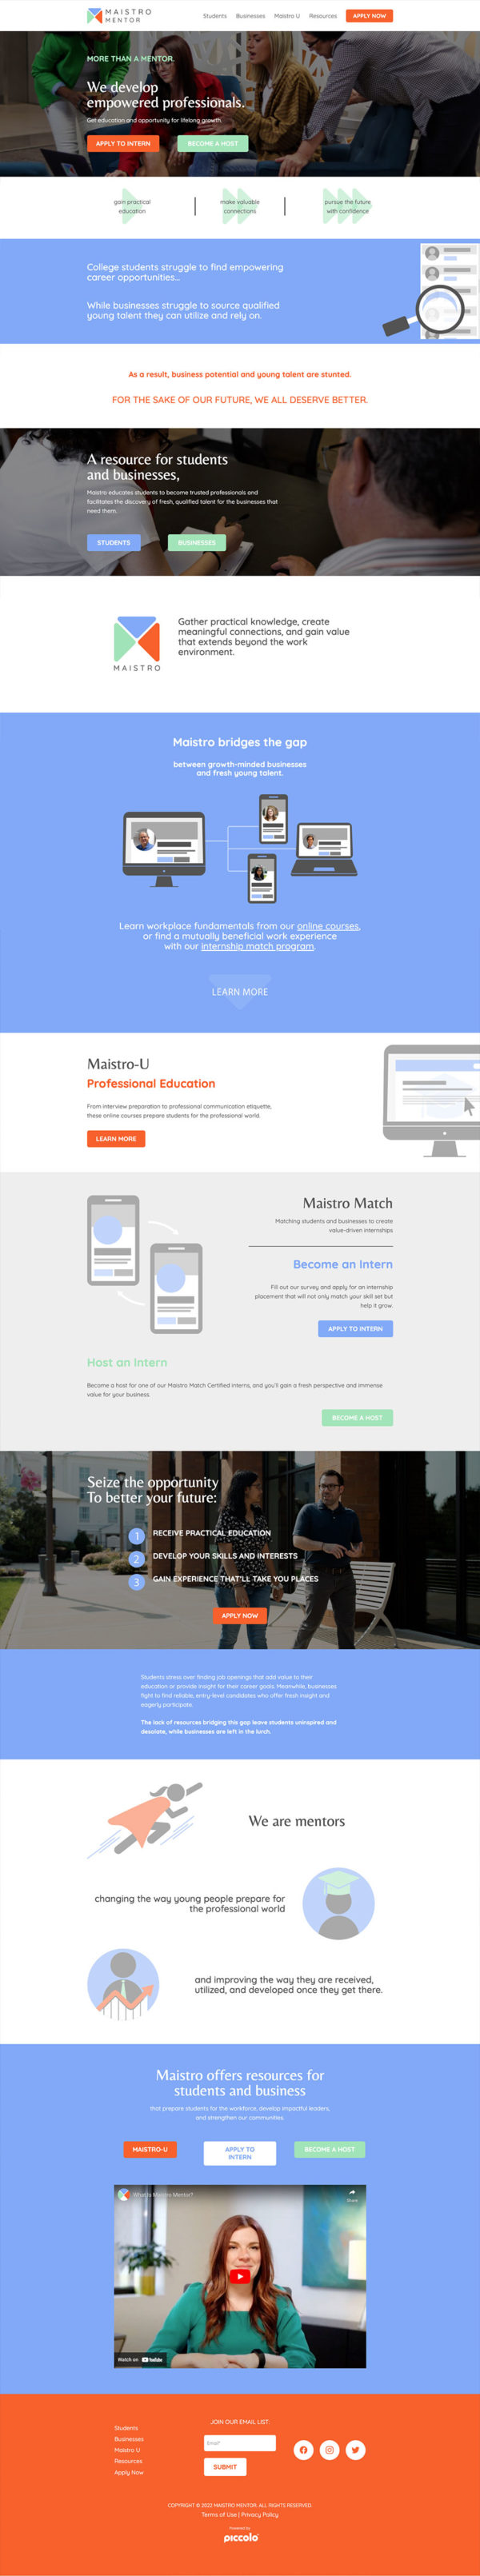 maistro-mentor-web-design